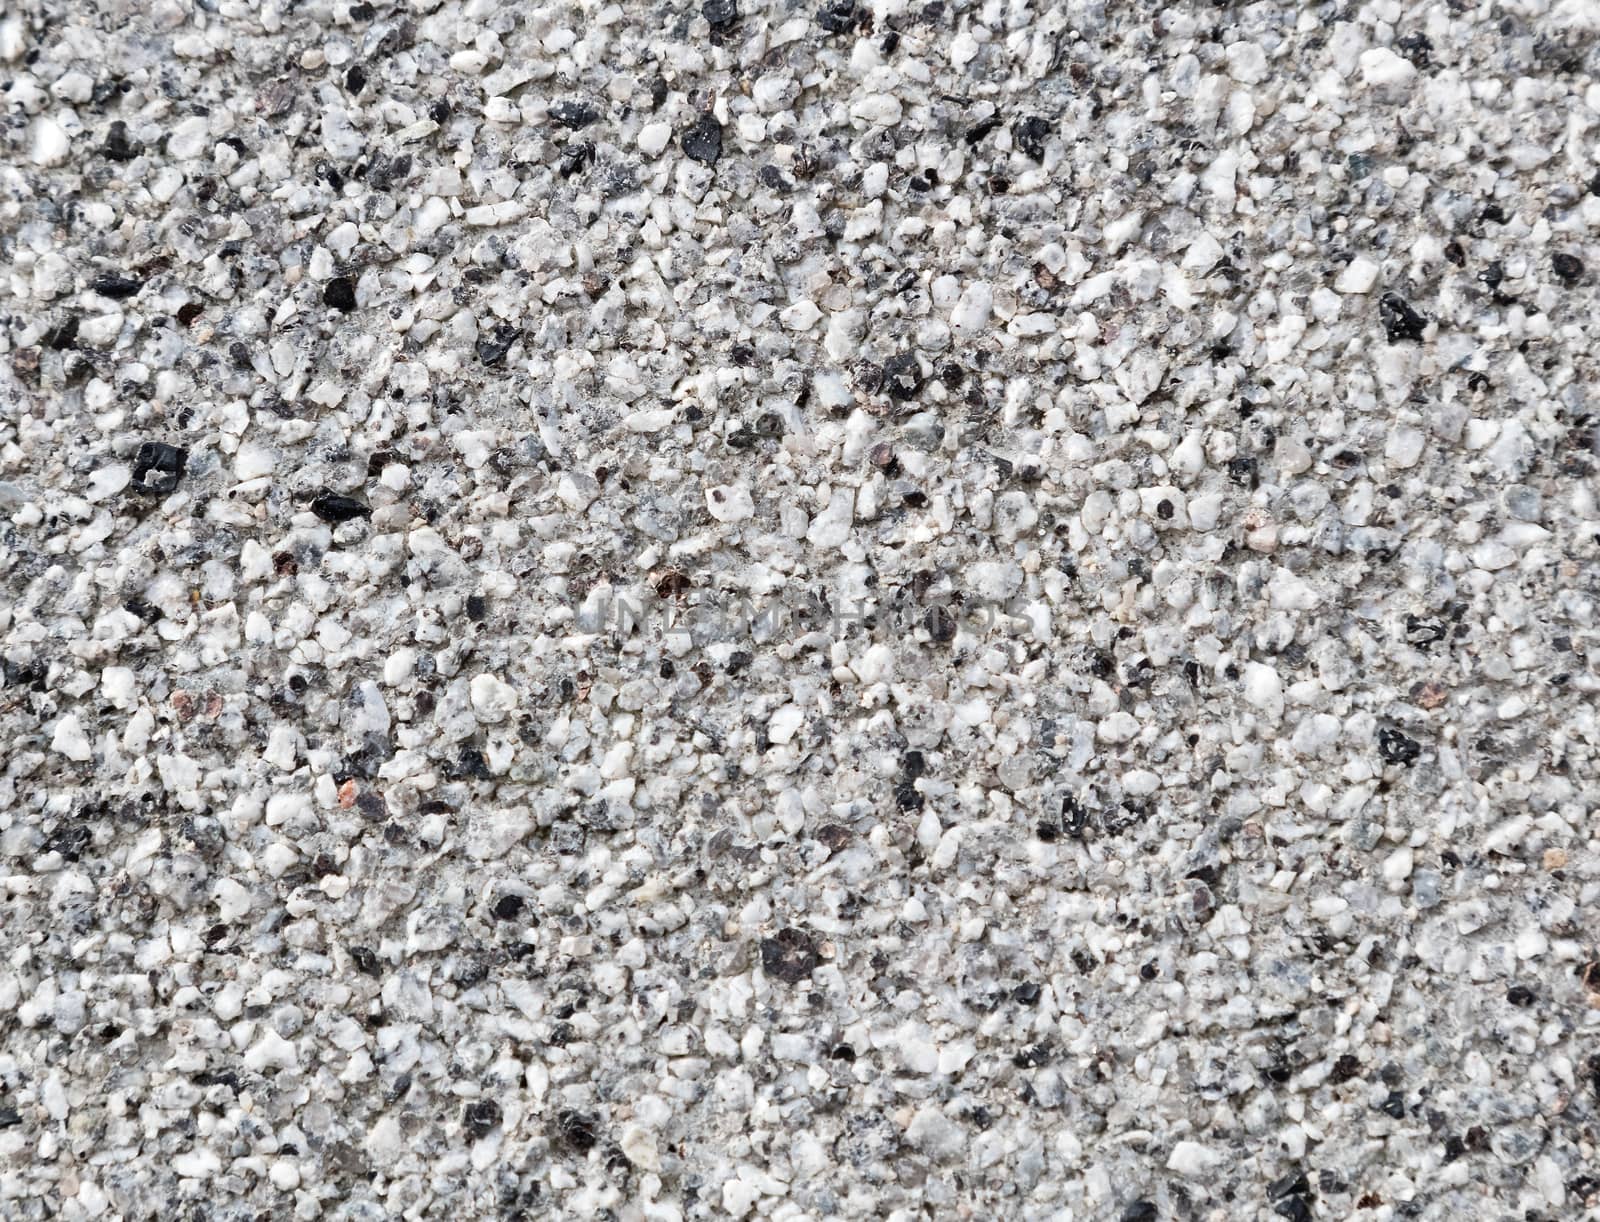 White Texture of Plaster grain